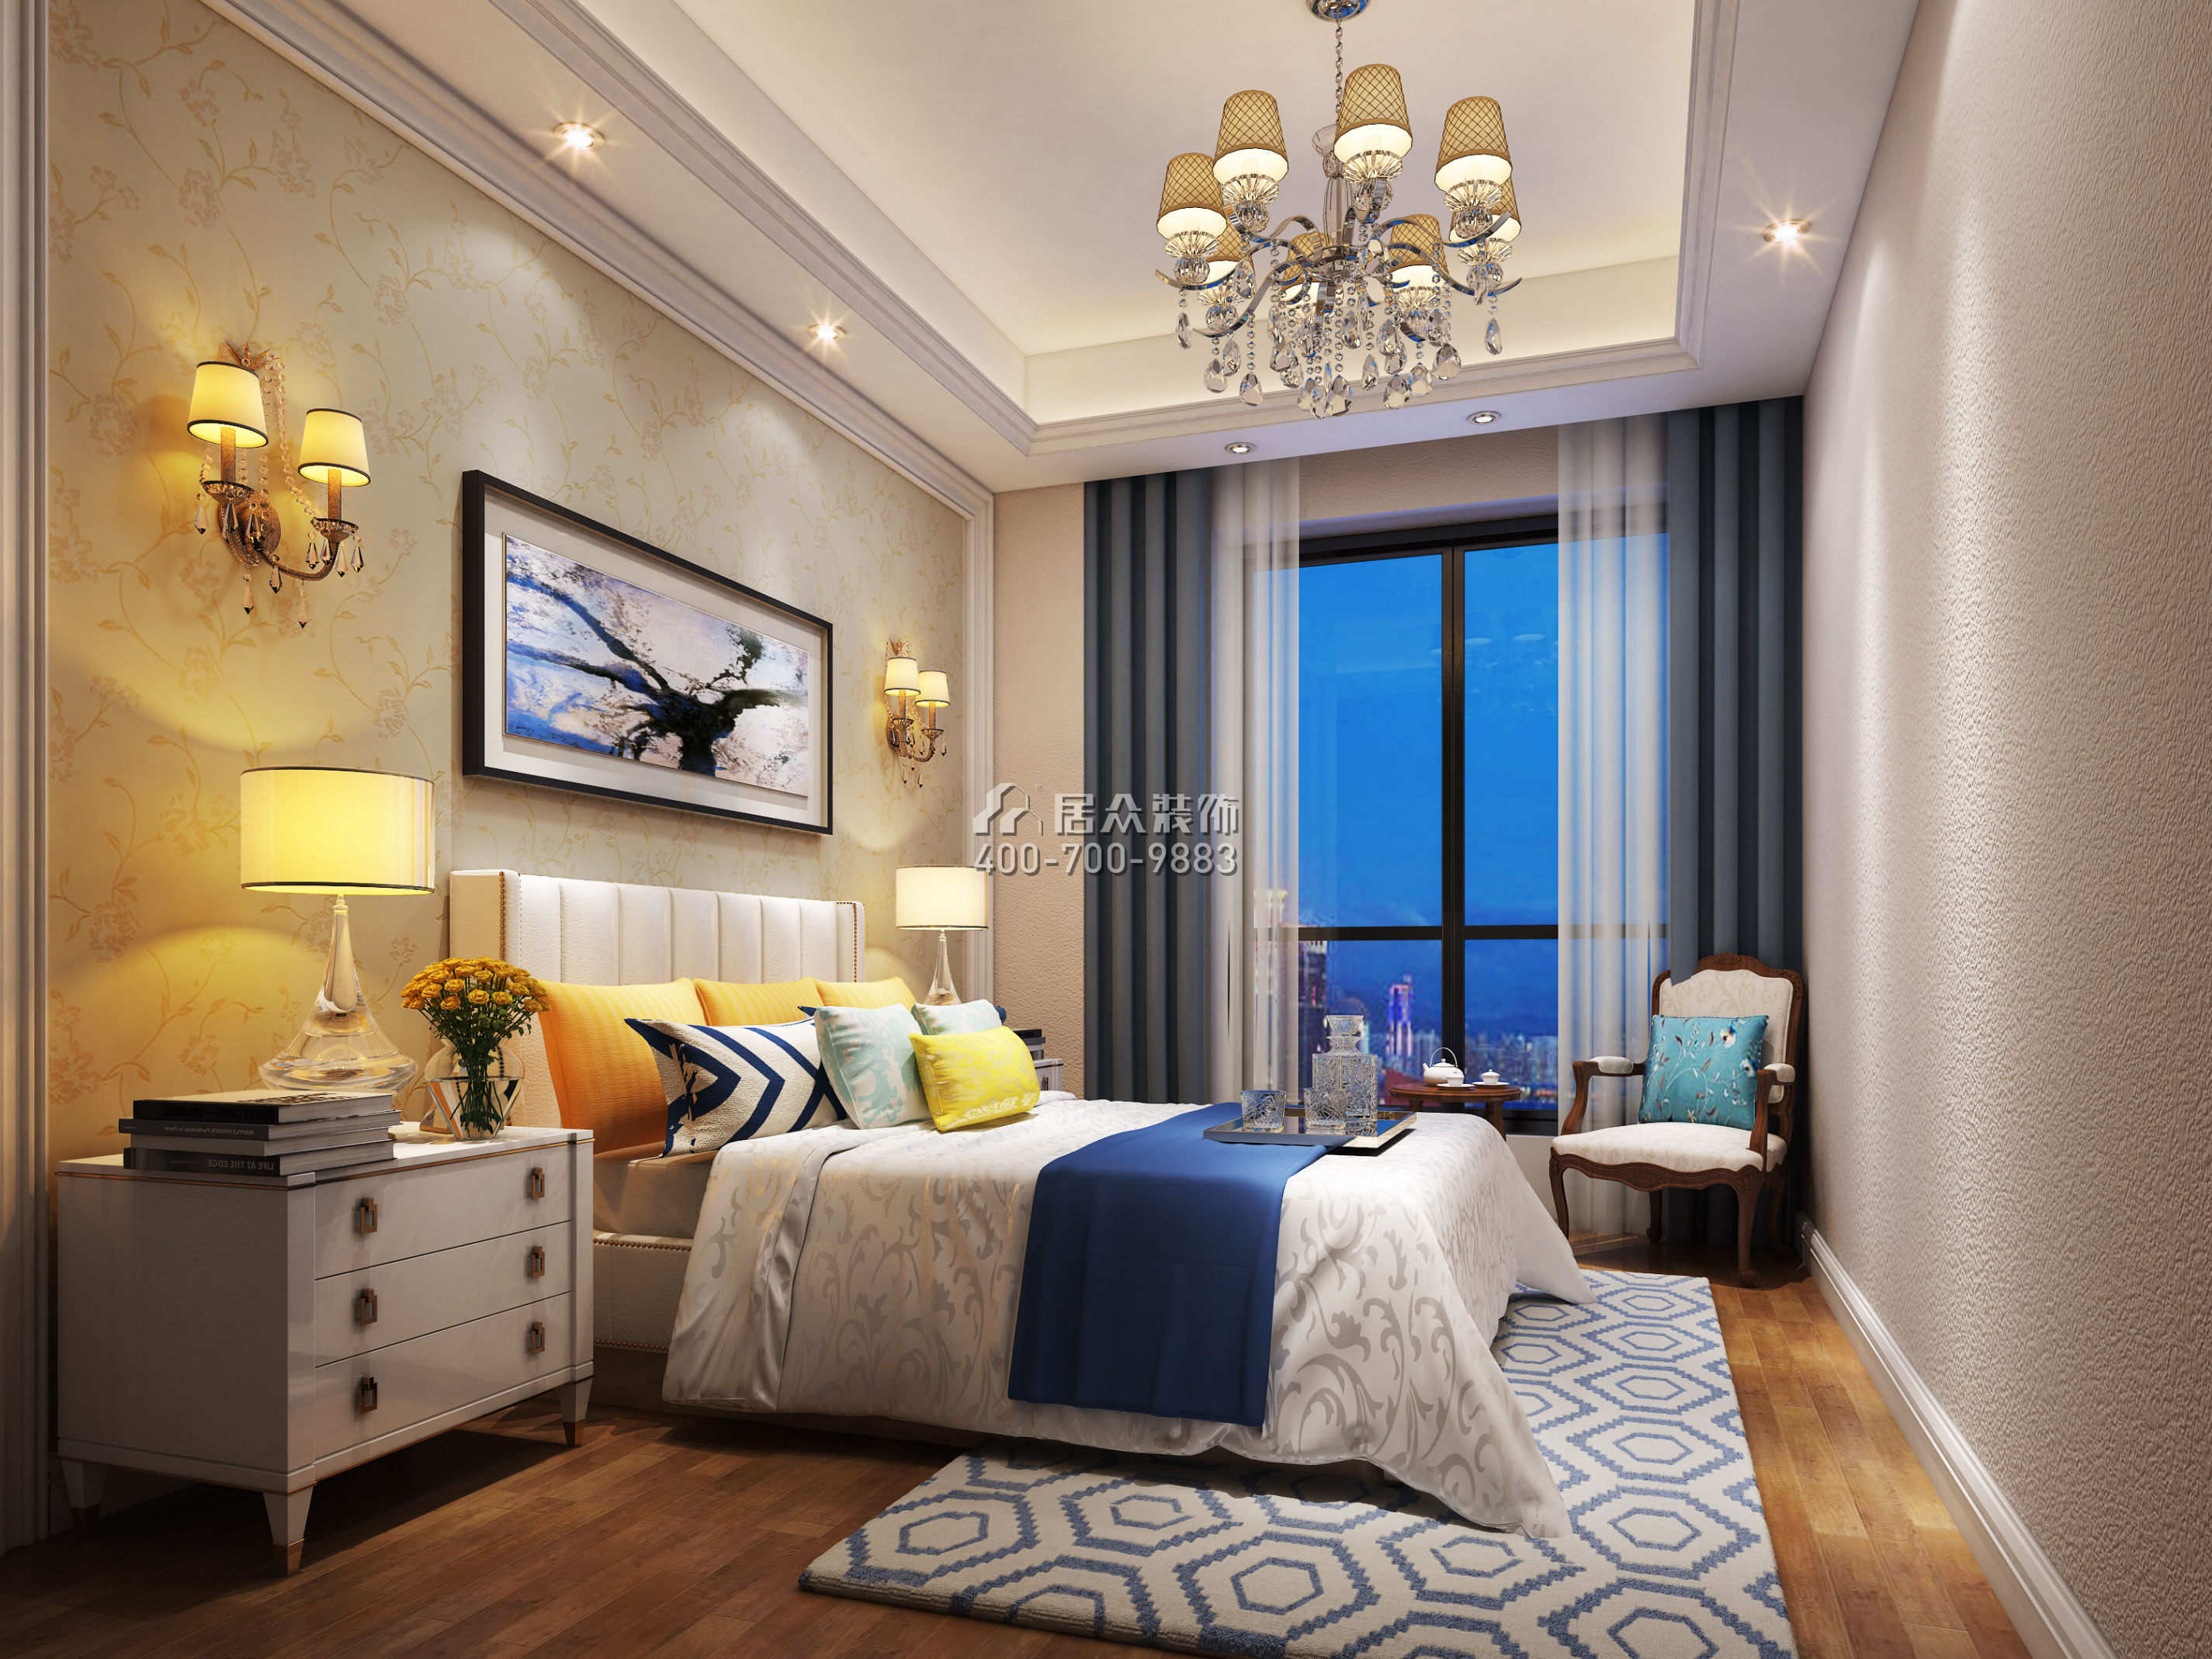 香蜜湖九号大院310平方米欧式风格平层户型卧室装修效果图